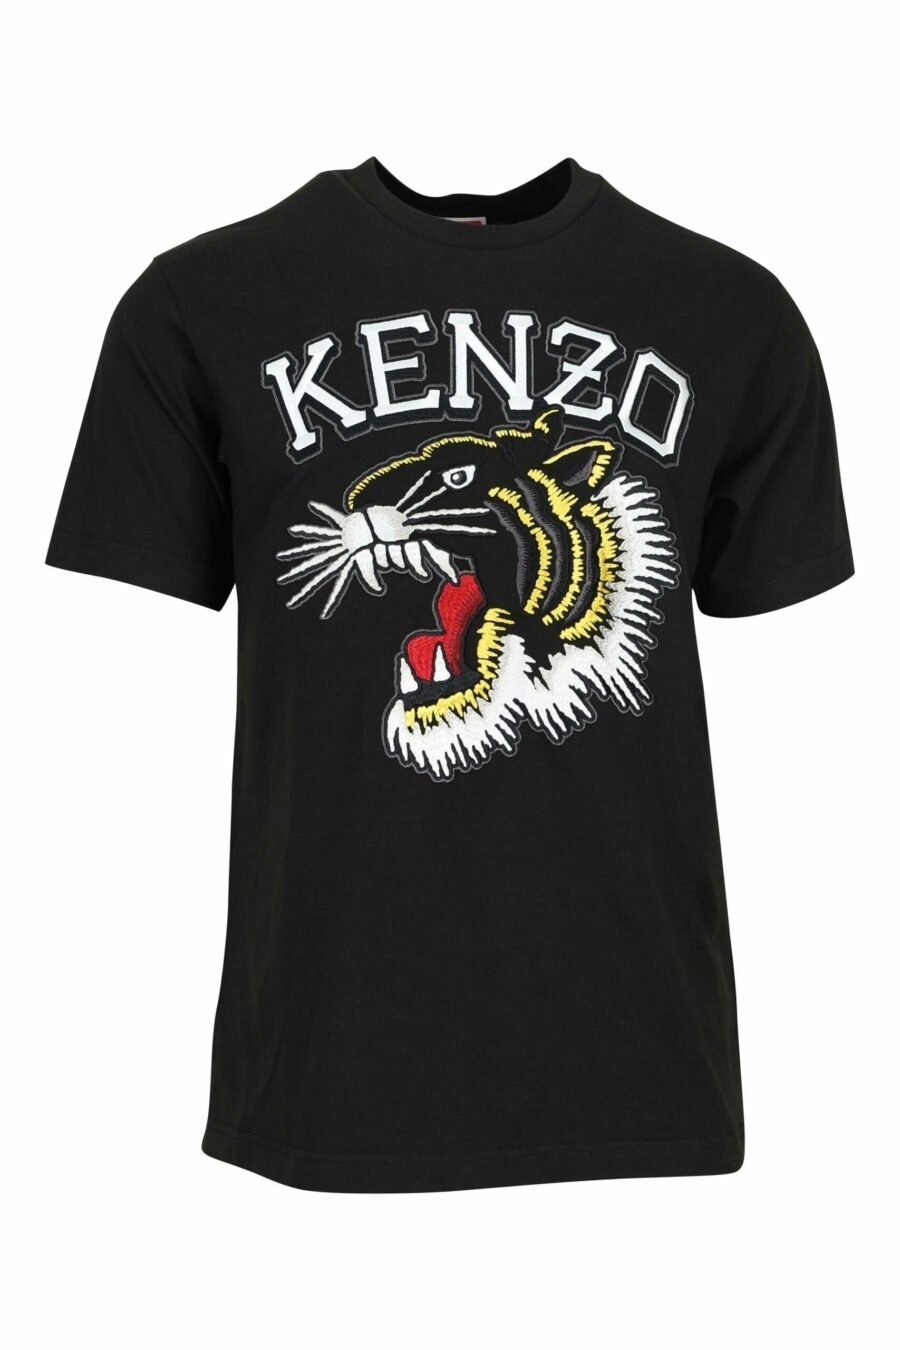 T-shirt preta com maxilogo de tigre multicolorido - 3612230625112 scaled